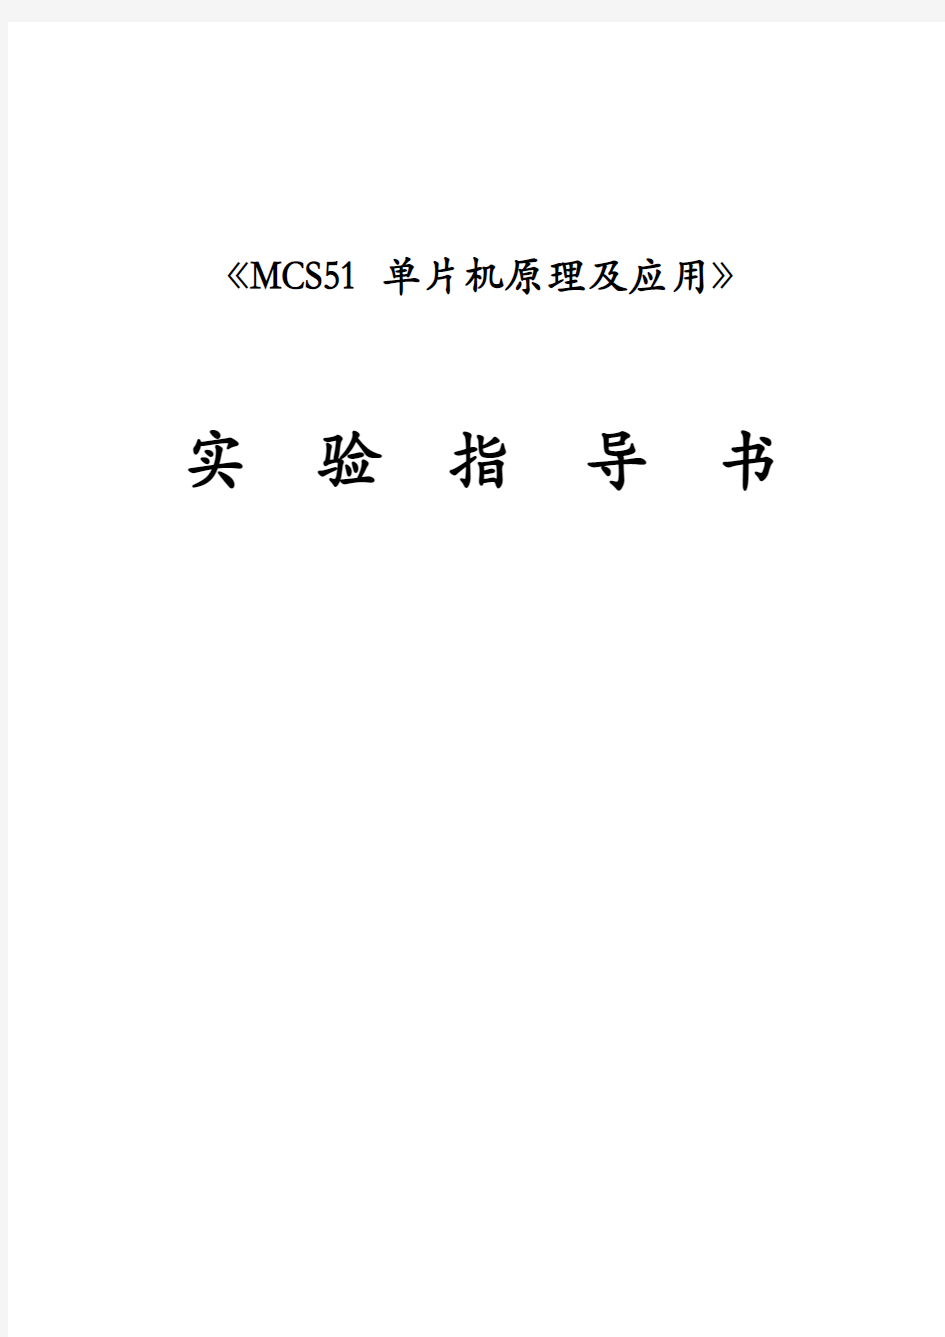 MCS51单片机原理及应用实验指导书